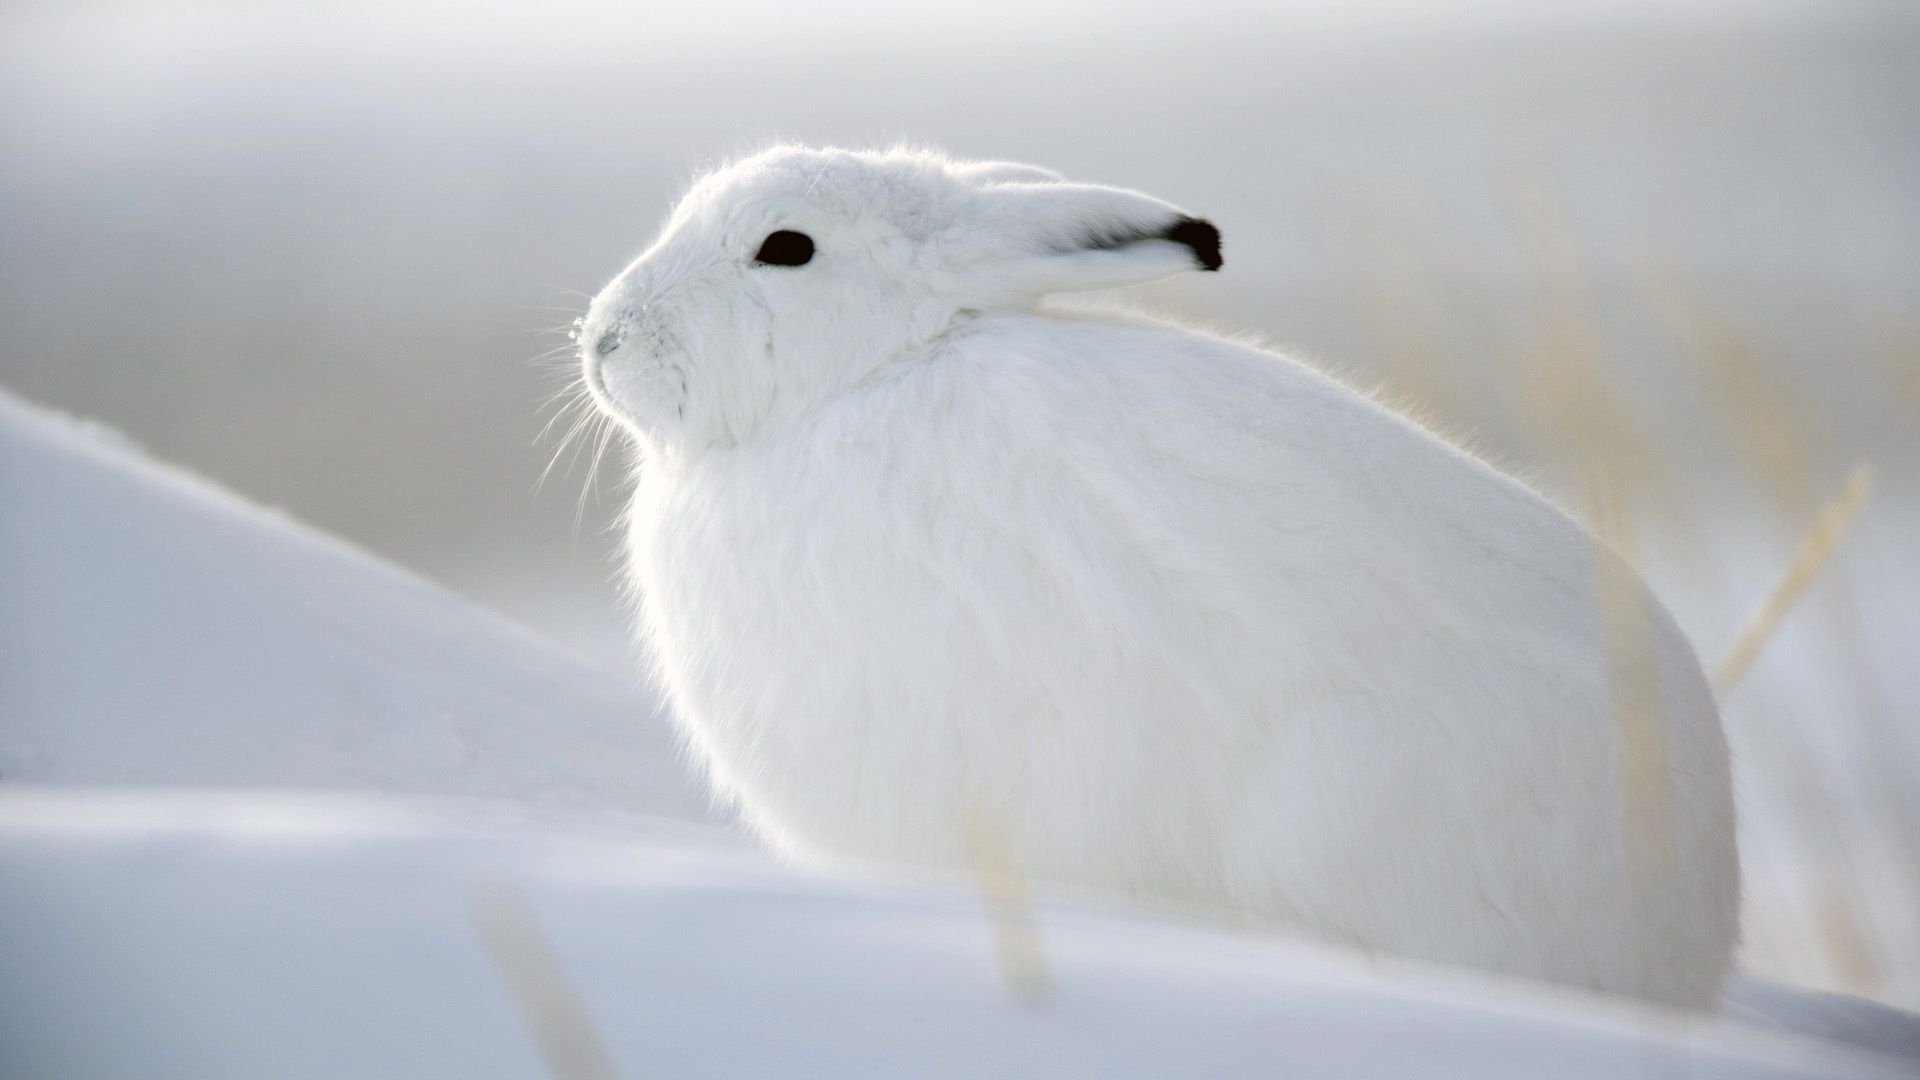 Snow Bunny, High Definition, High Quality, Widescreen. Обои с животными, Животные, Милые детеныши животных